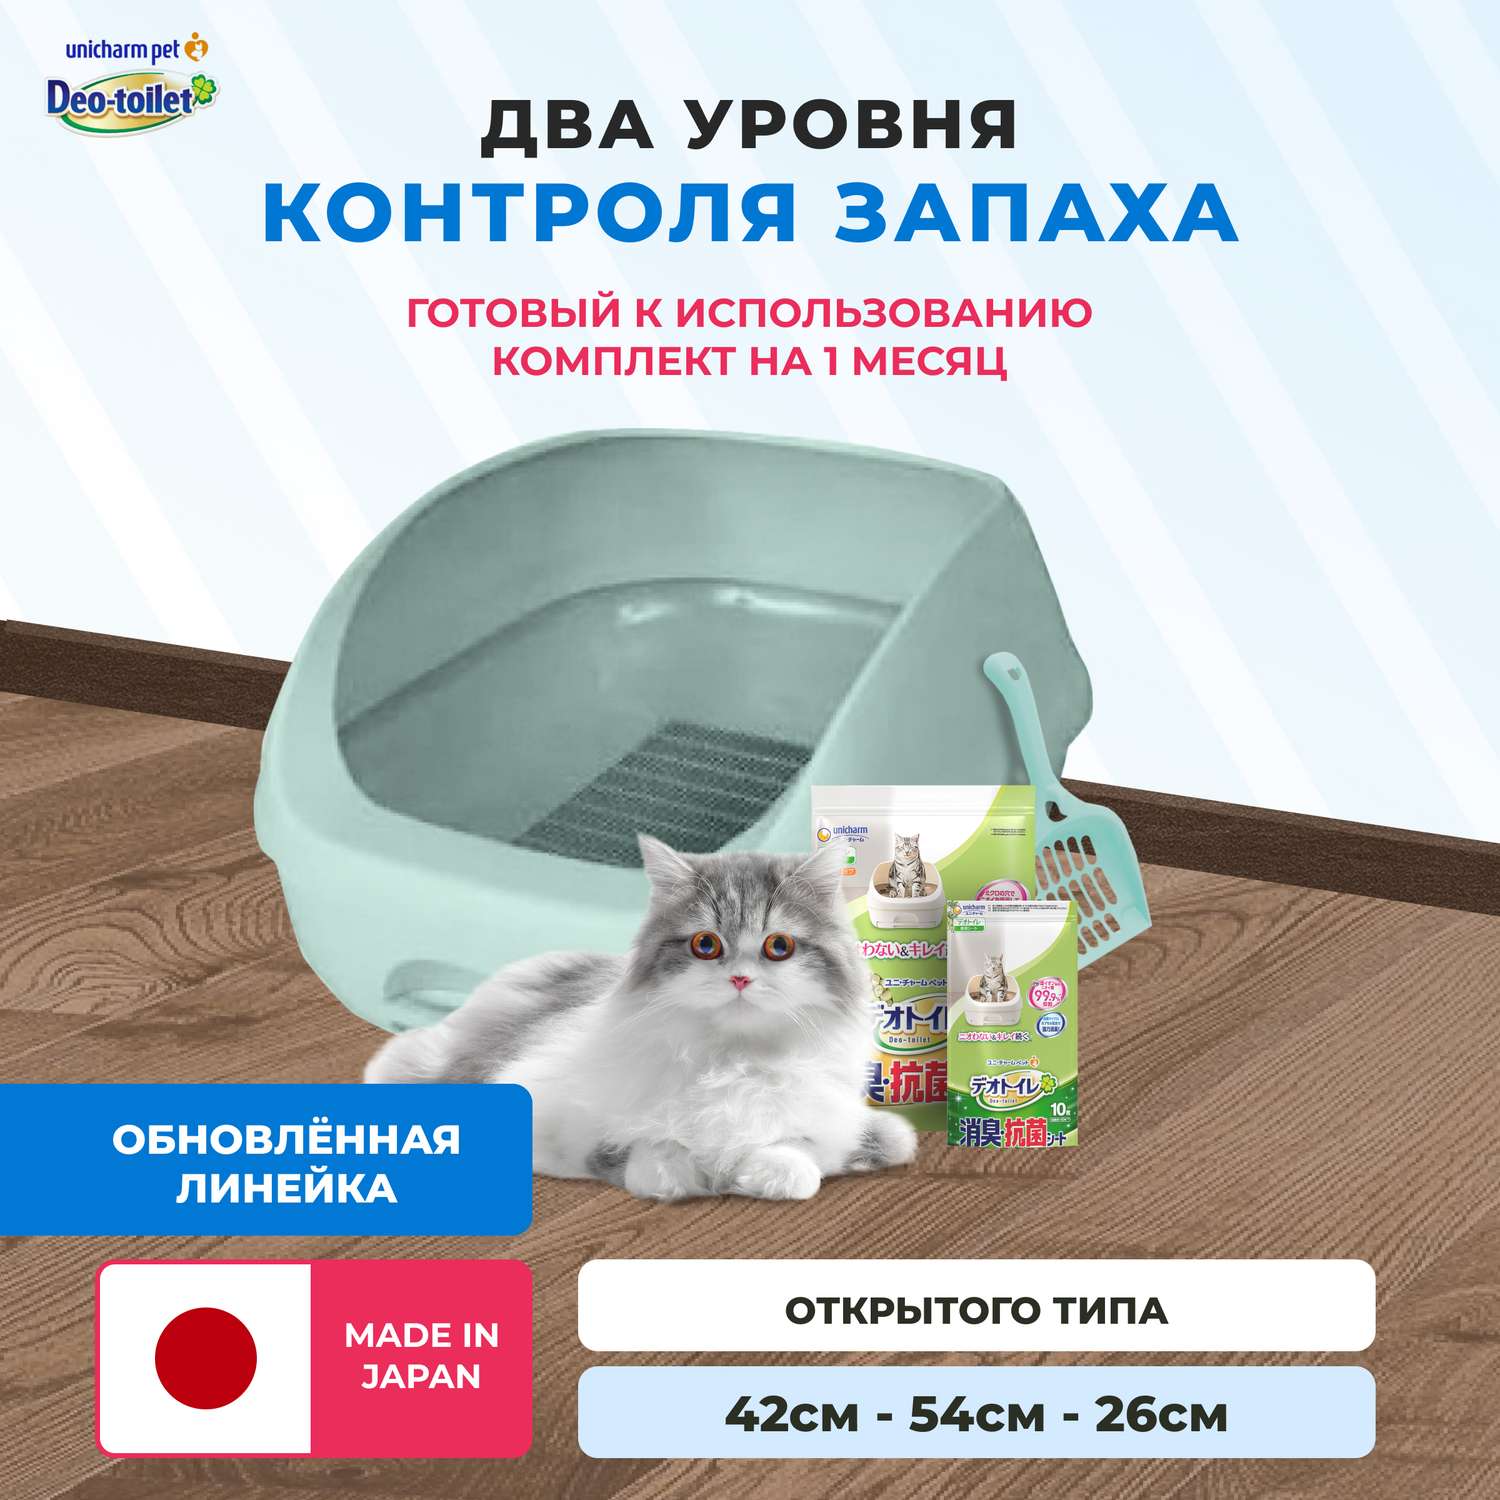 Системный туалет DeoToilet Unicharm для кошек открытого типа цвет бирюзовый набор - фото 1